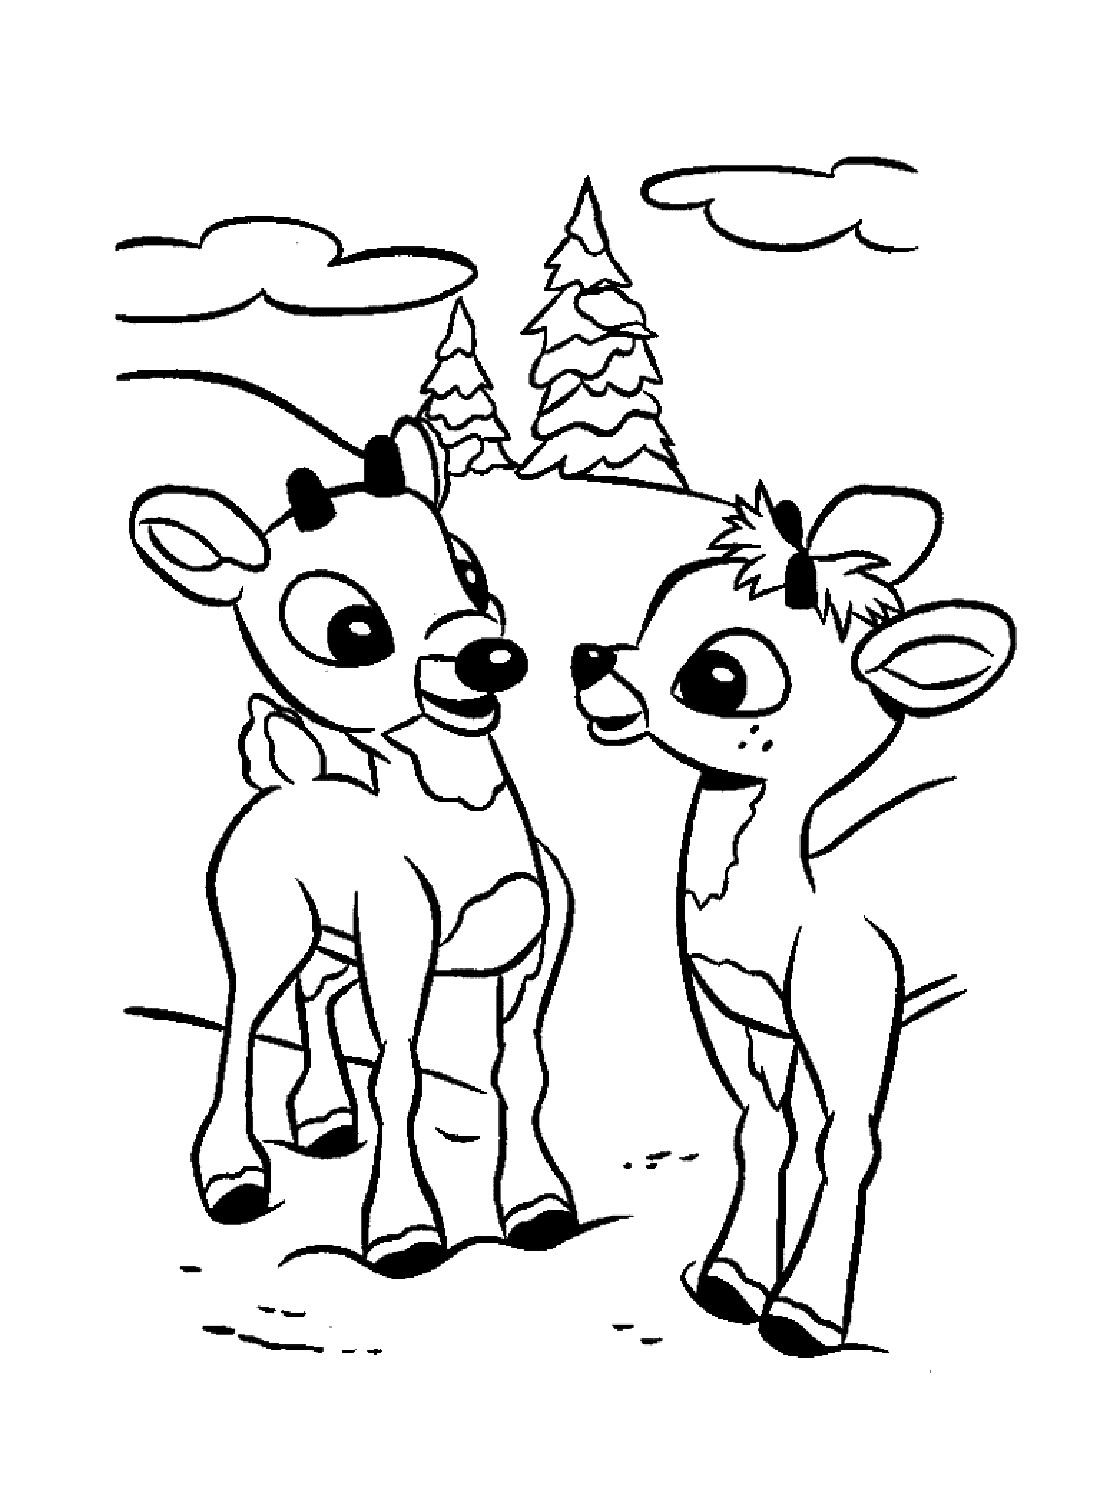 Rudolph und ein weiteres Rentier von Rudolph